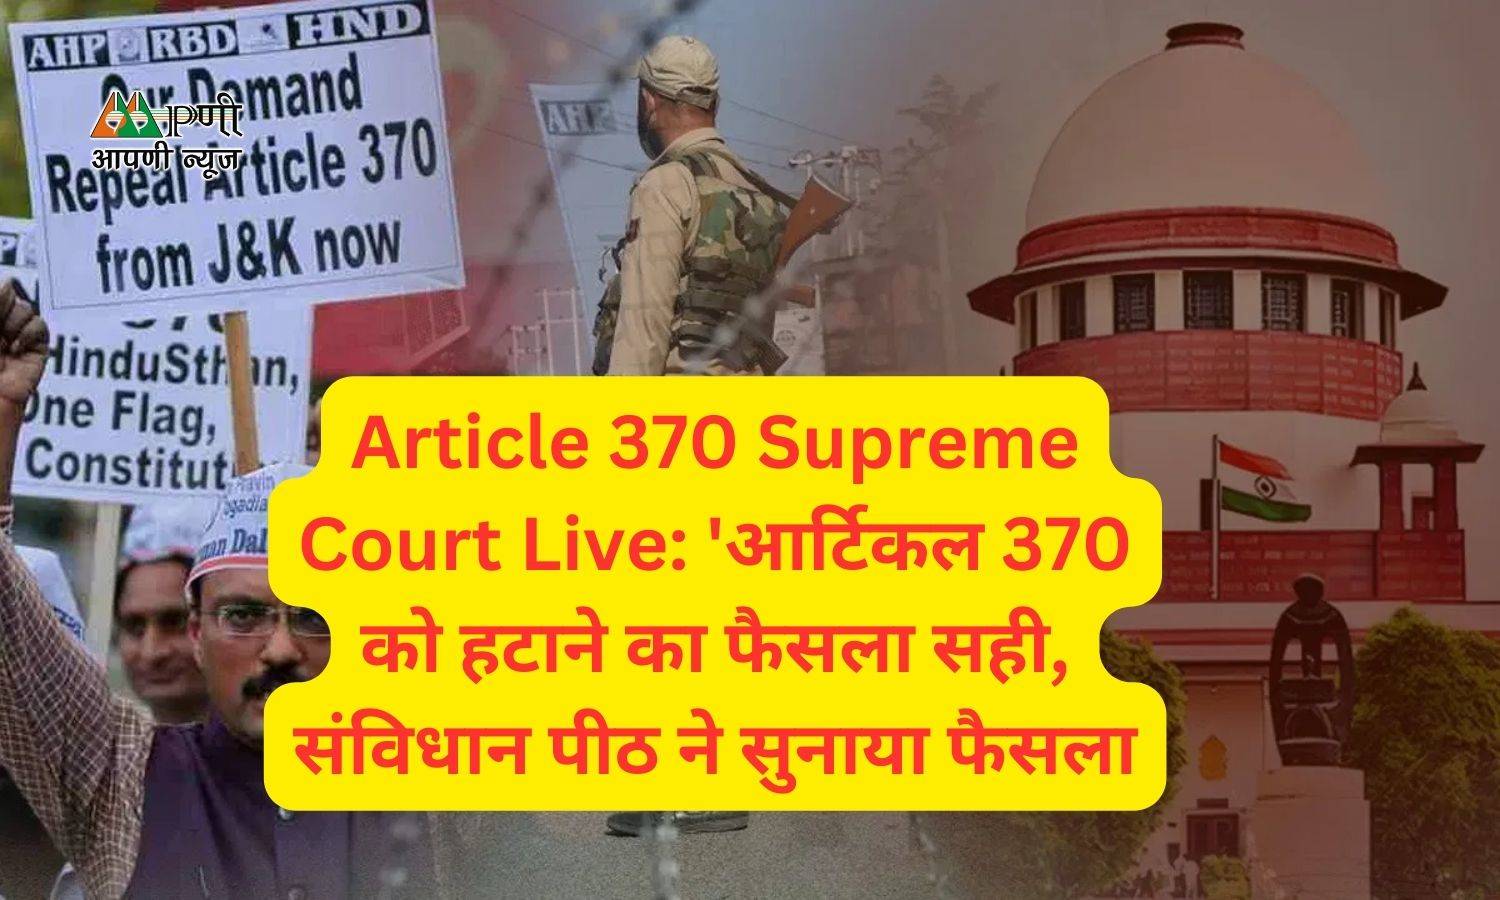 Article 370 Supreme Court Live: 'आर्टिकल 370 को हटाने का फैसला सही, संविधान पीठ ने सुनाया फैसला